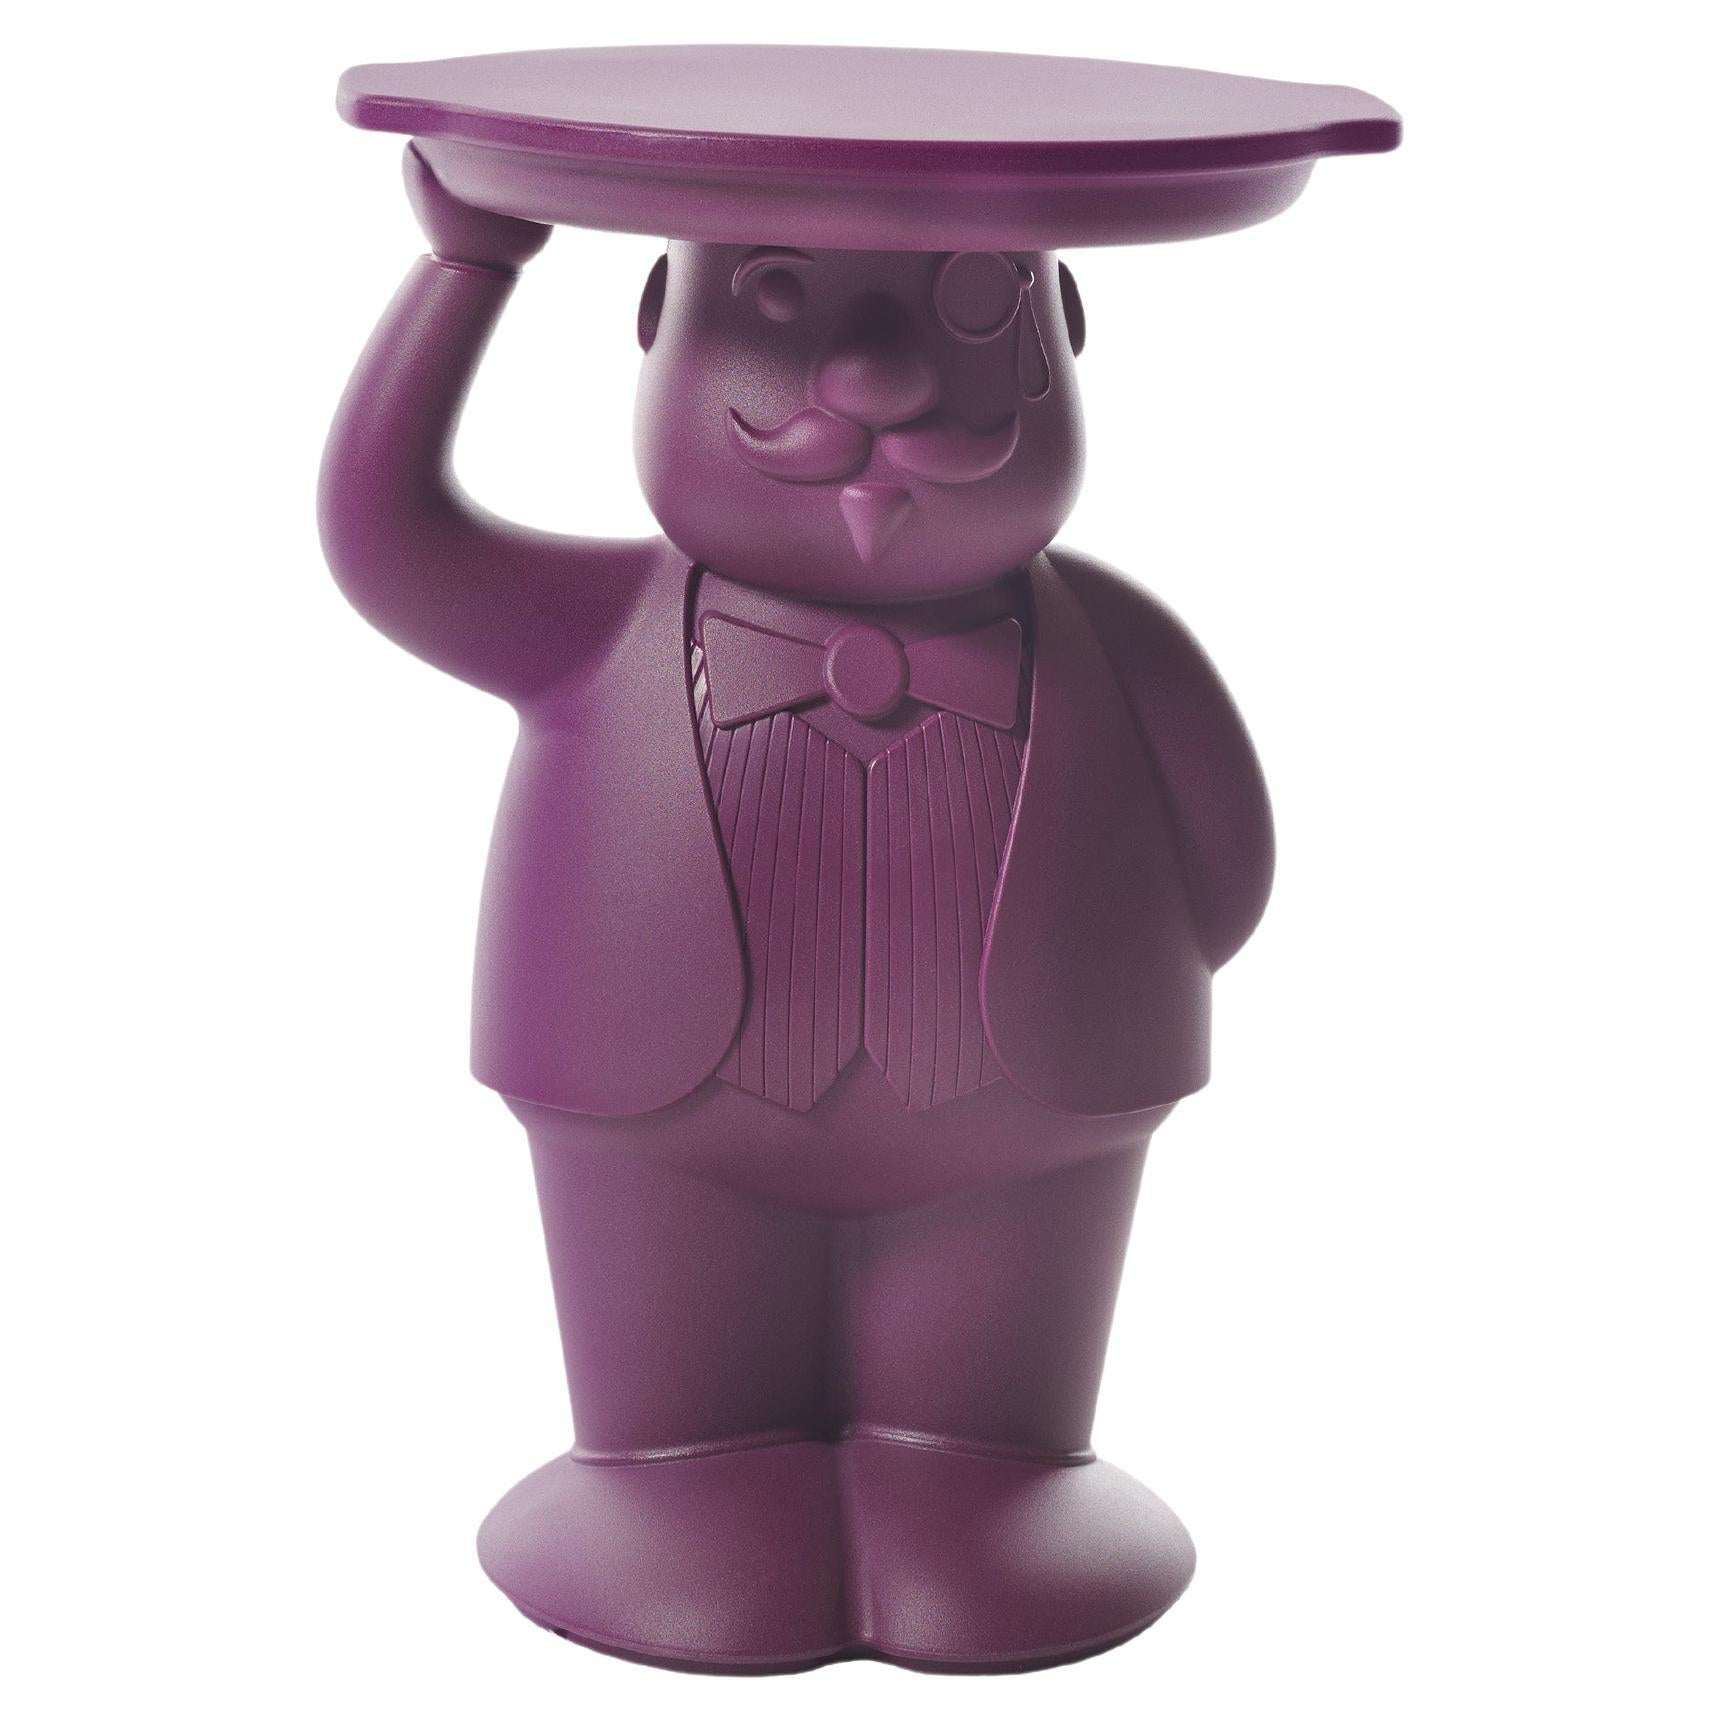 Slide Design Ambrogio Servant Table in Plum Purple by Favaretto & Partners For Sale